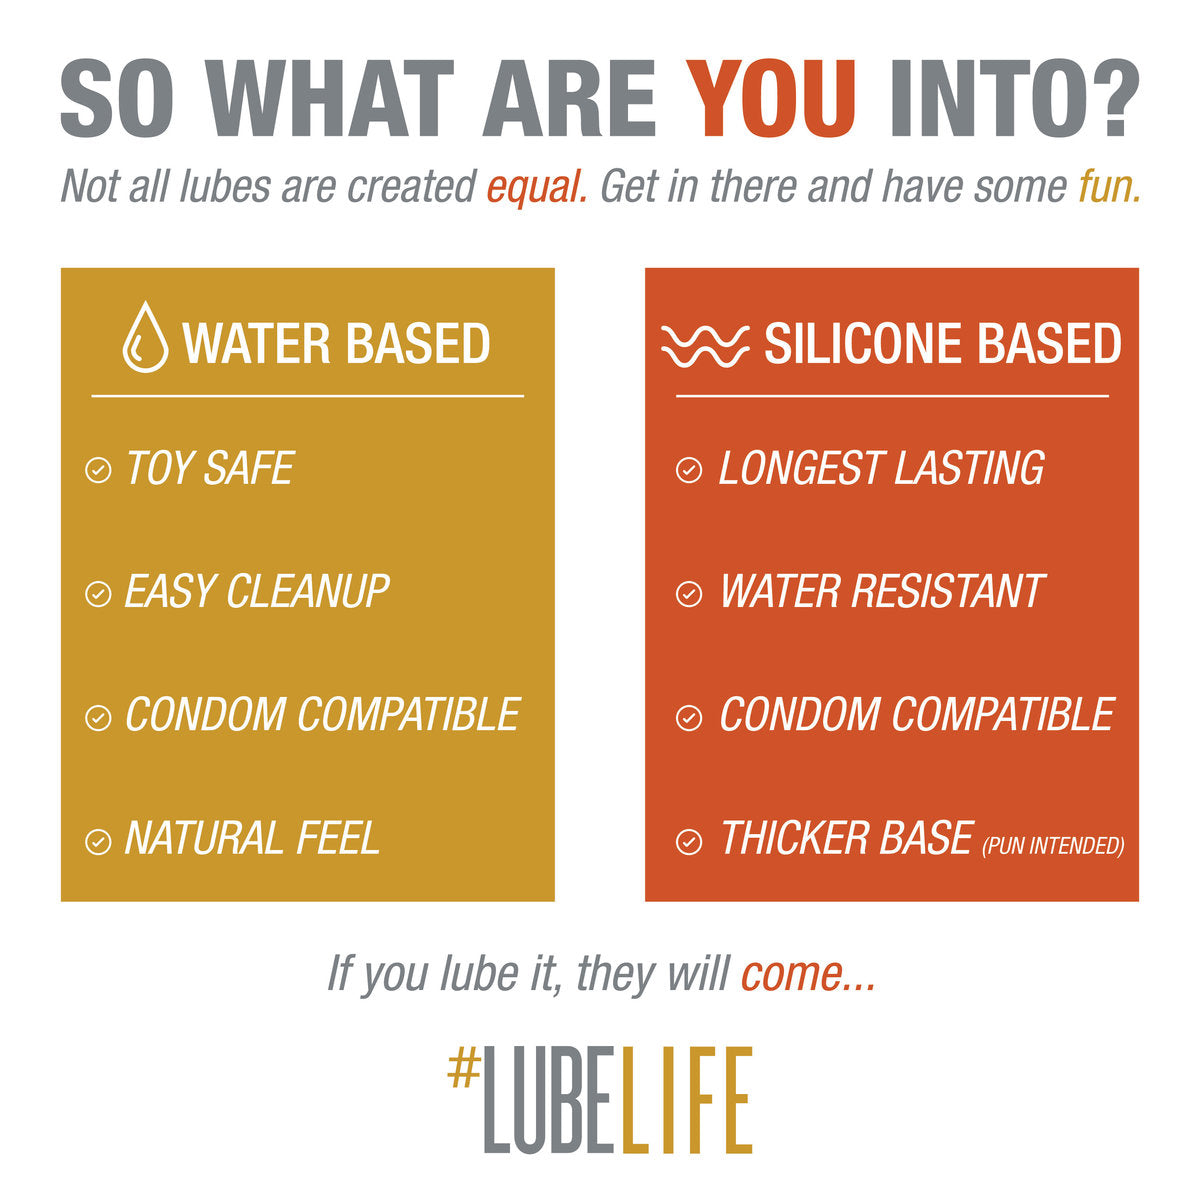 美國LubeLife – Water Based Lubricant水性潤滑劑 – 360ml